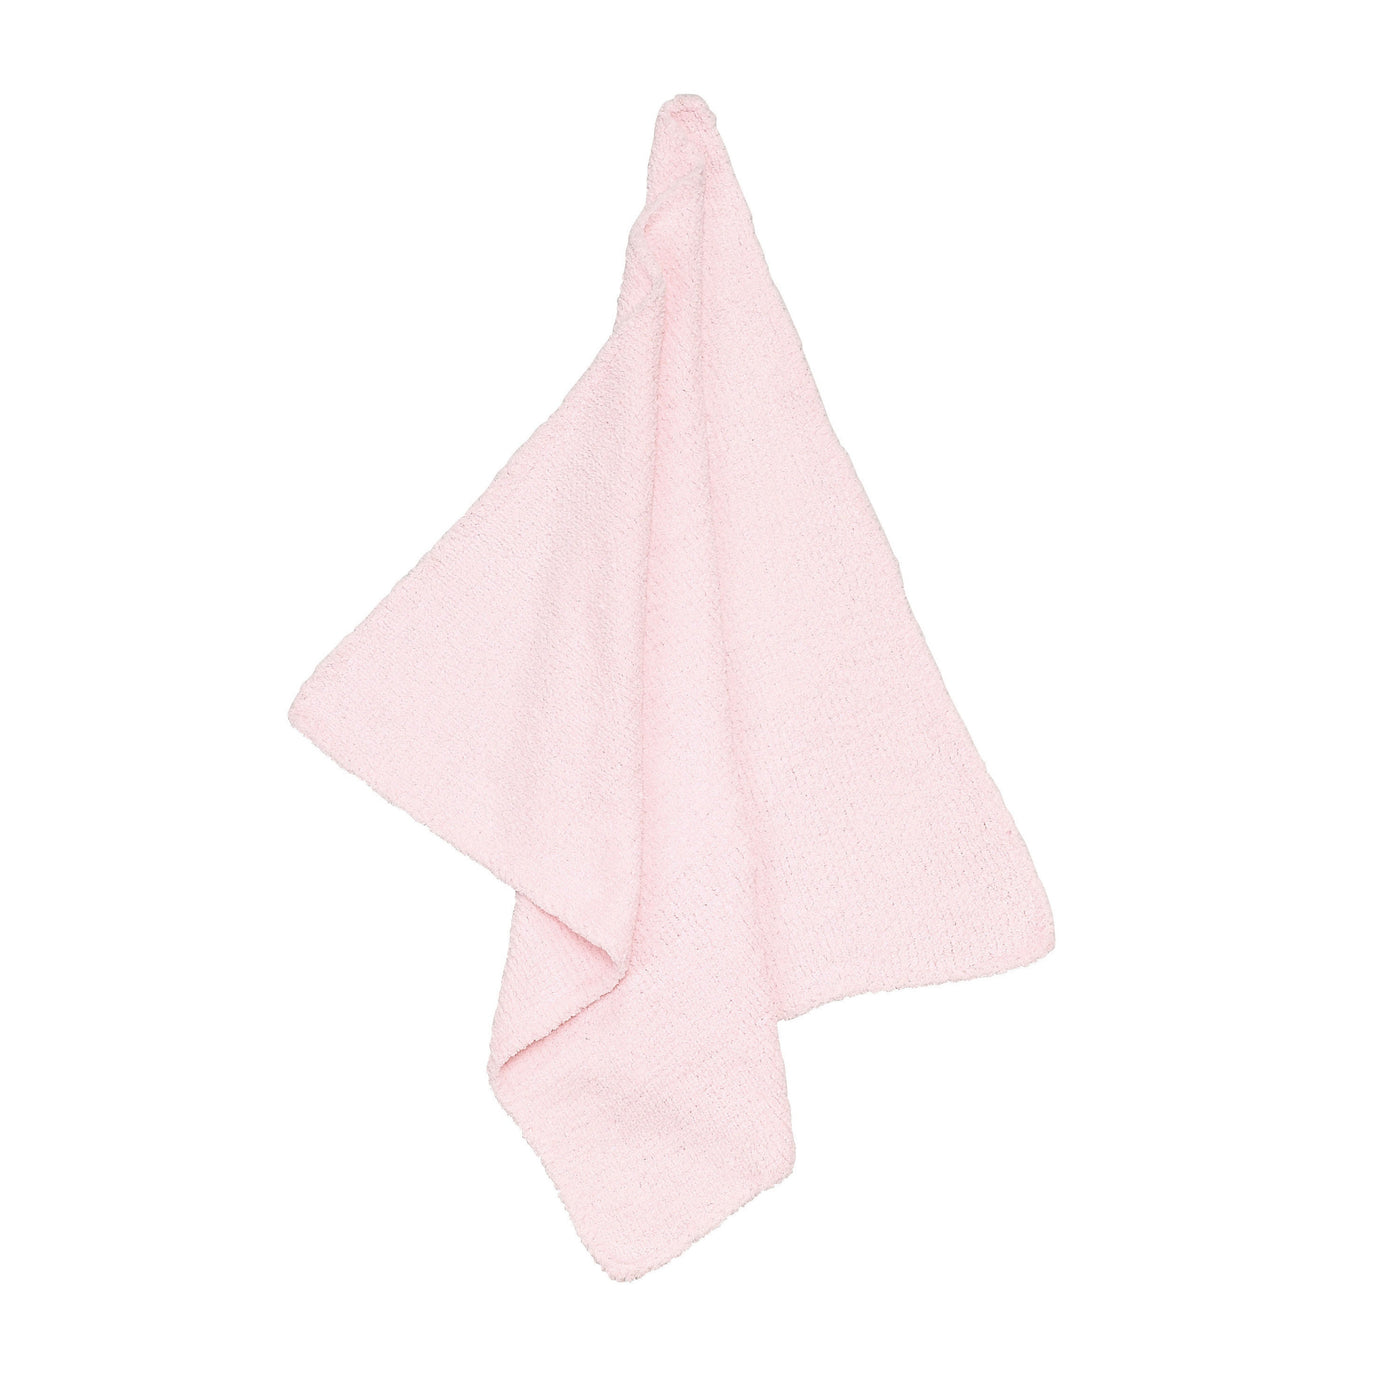 Chenille Blanket - Pretty Pink - Angel Dear